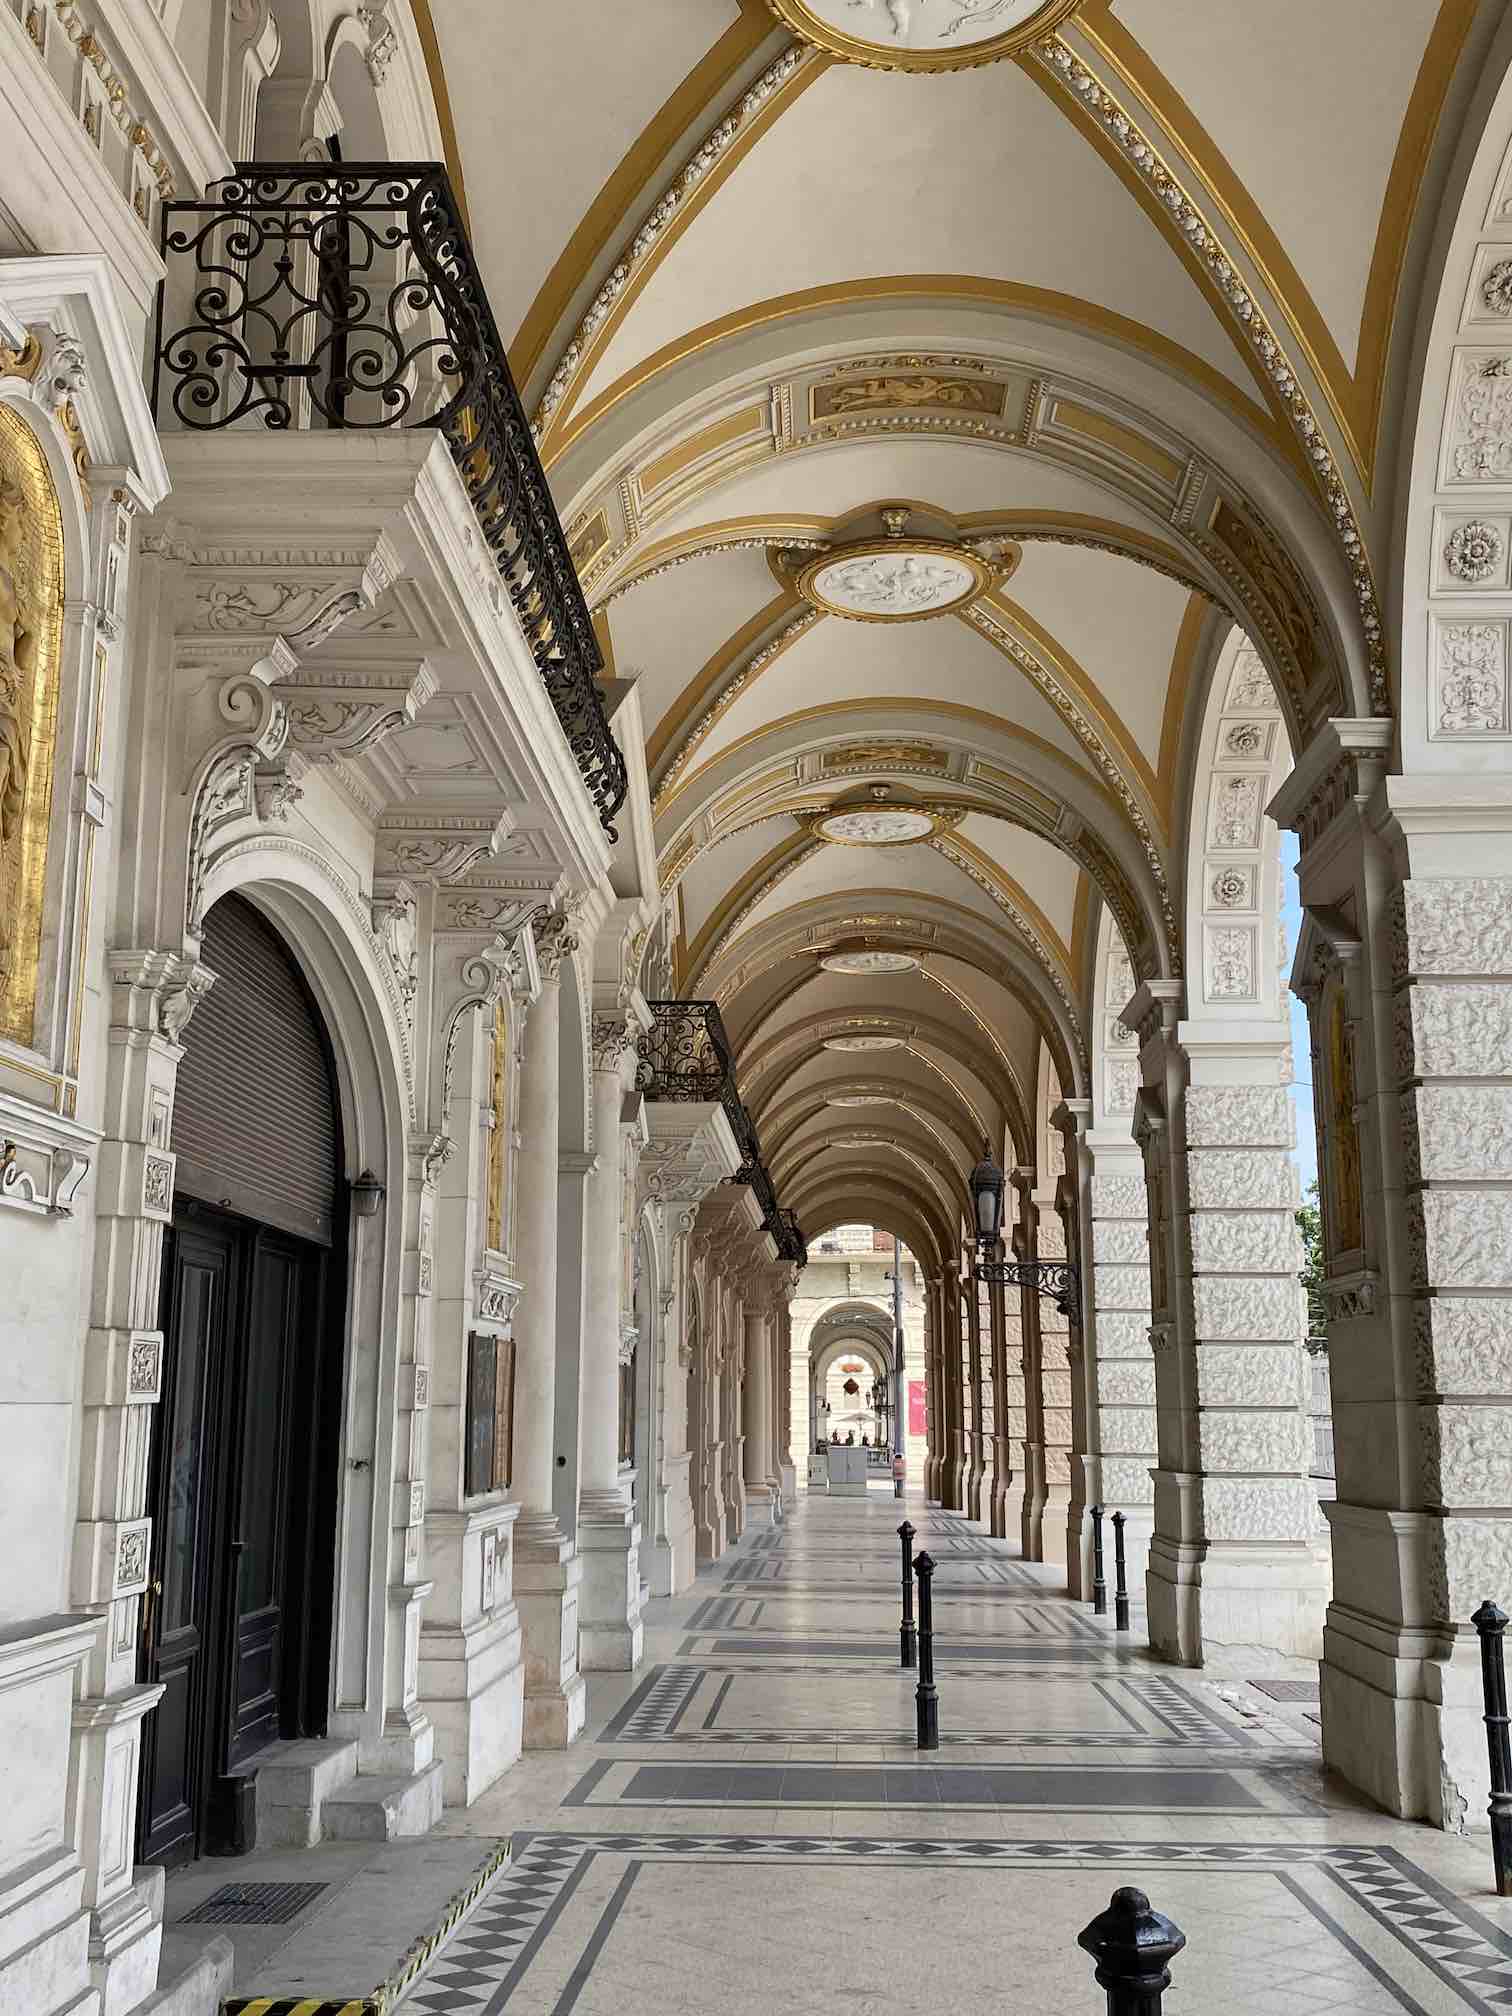 Sehenswürdigkeit Wiener Innenstadt, Straßenzug nahe Parlamentsgebäude, historische Architektur, Säulengang